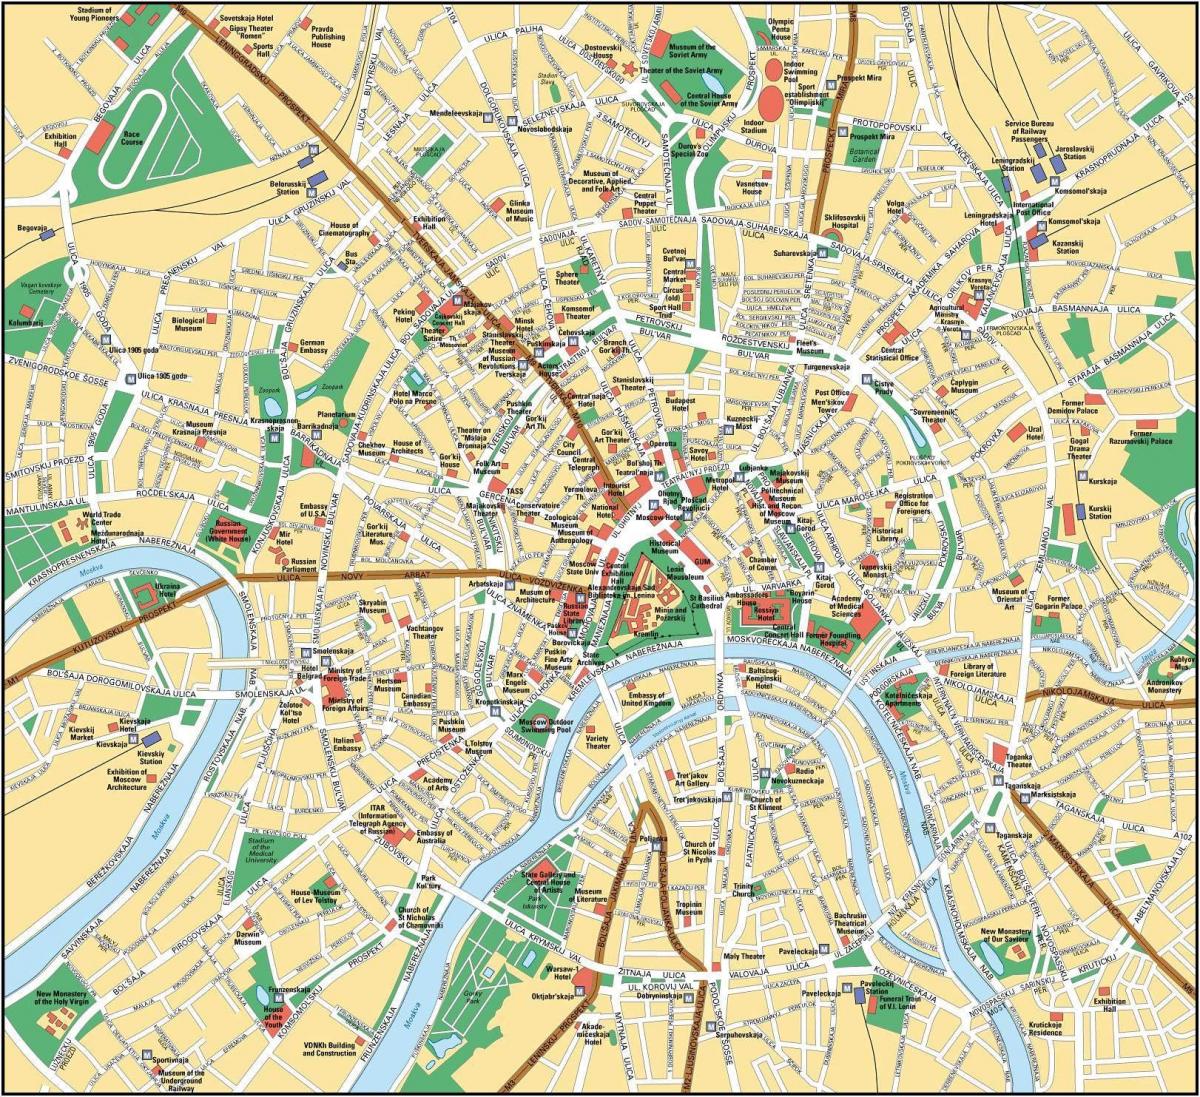 zemljevid Moskvi v angleškem jeziku